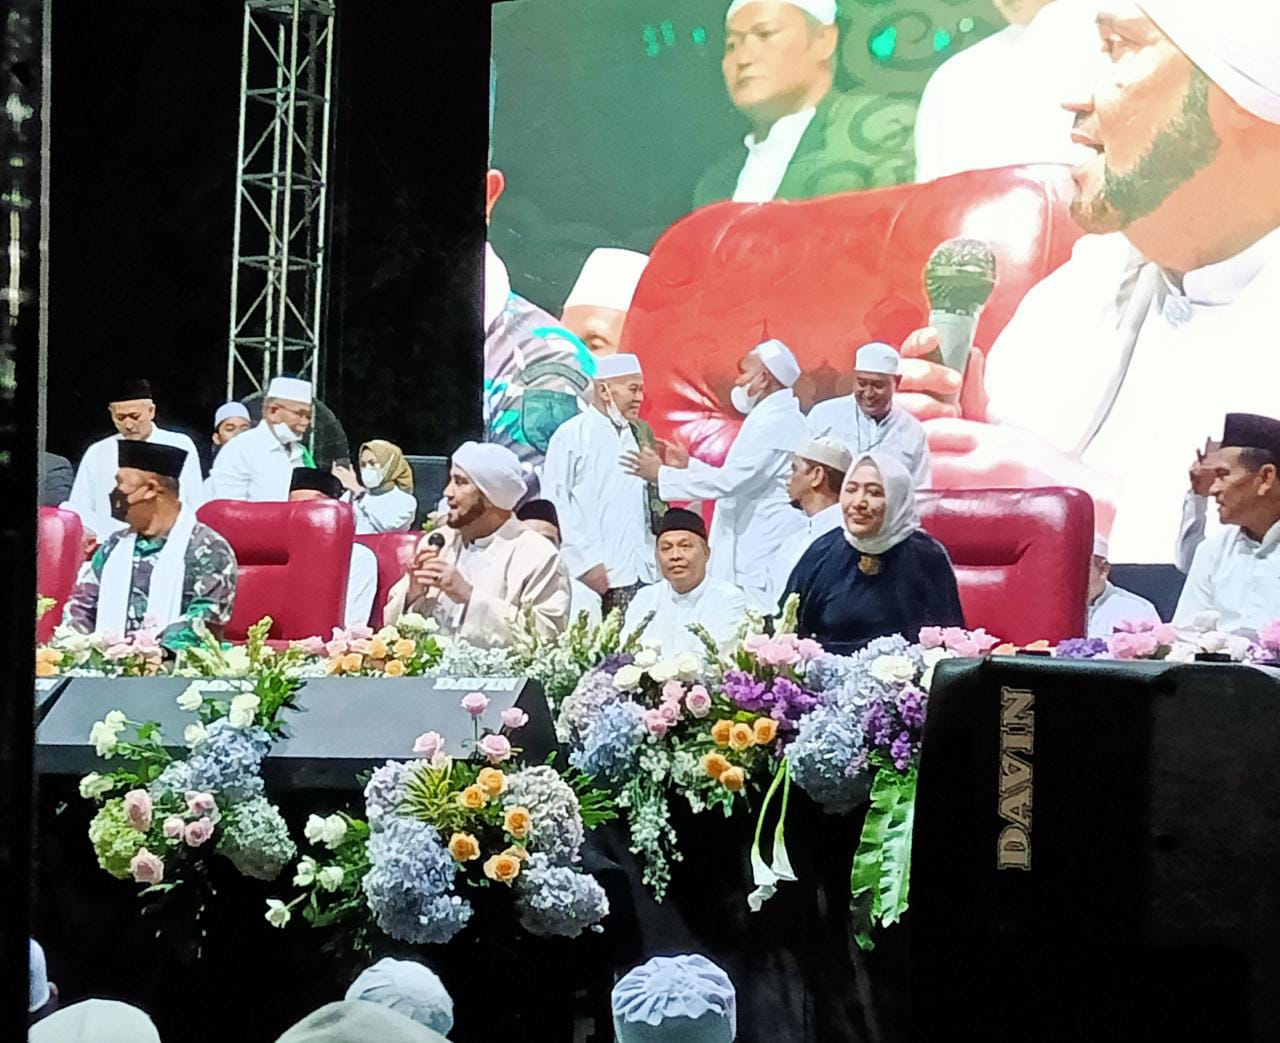 Habib Syech bin Abdul Qodir Assegaf didampingi Bupati Bojonegoro Anna Muawanah dalam gelaran Bojonegoro Bersholawat di Alun-Alun Bojonegoro, Senin (27/06/2022) malam.